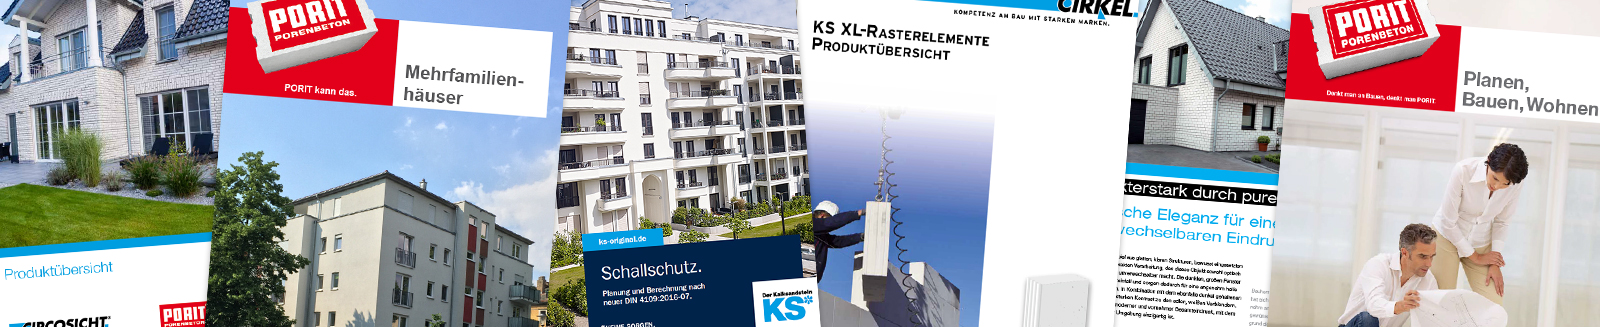 KS XL-Rasterelemente - Downloads